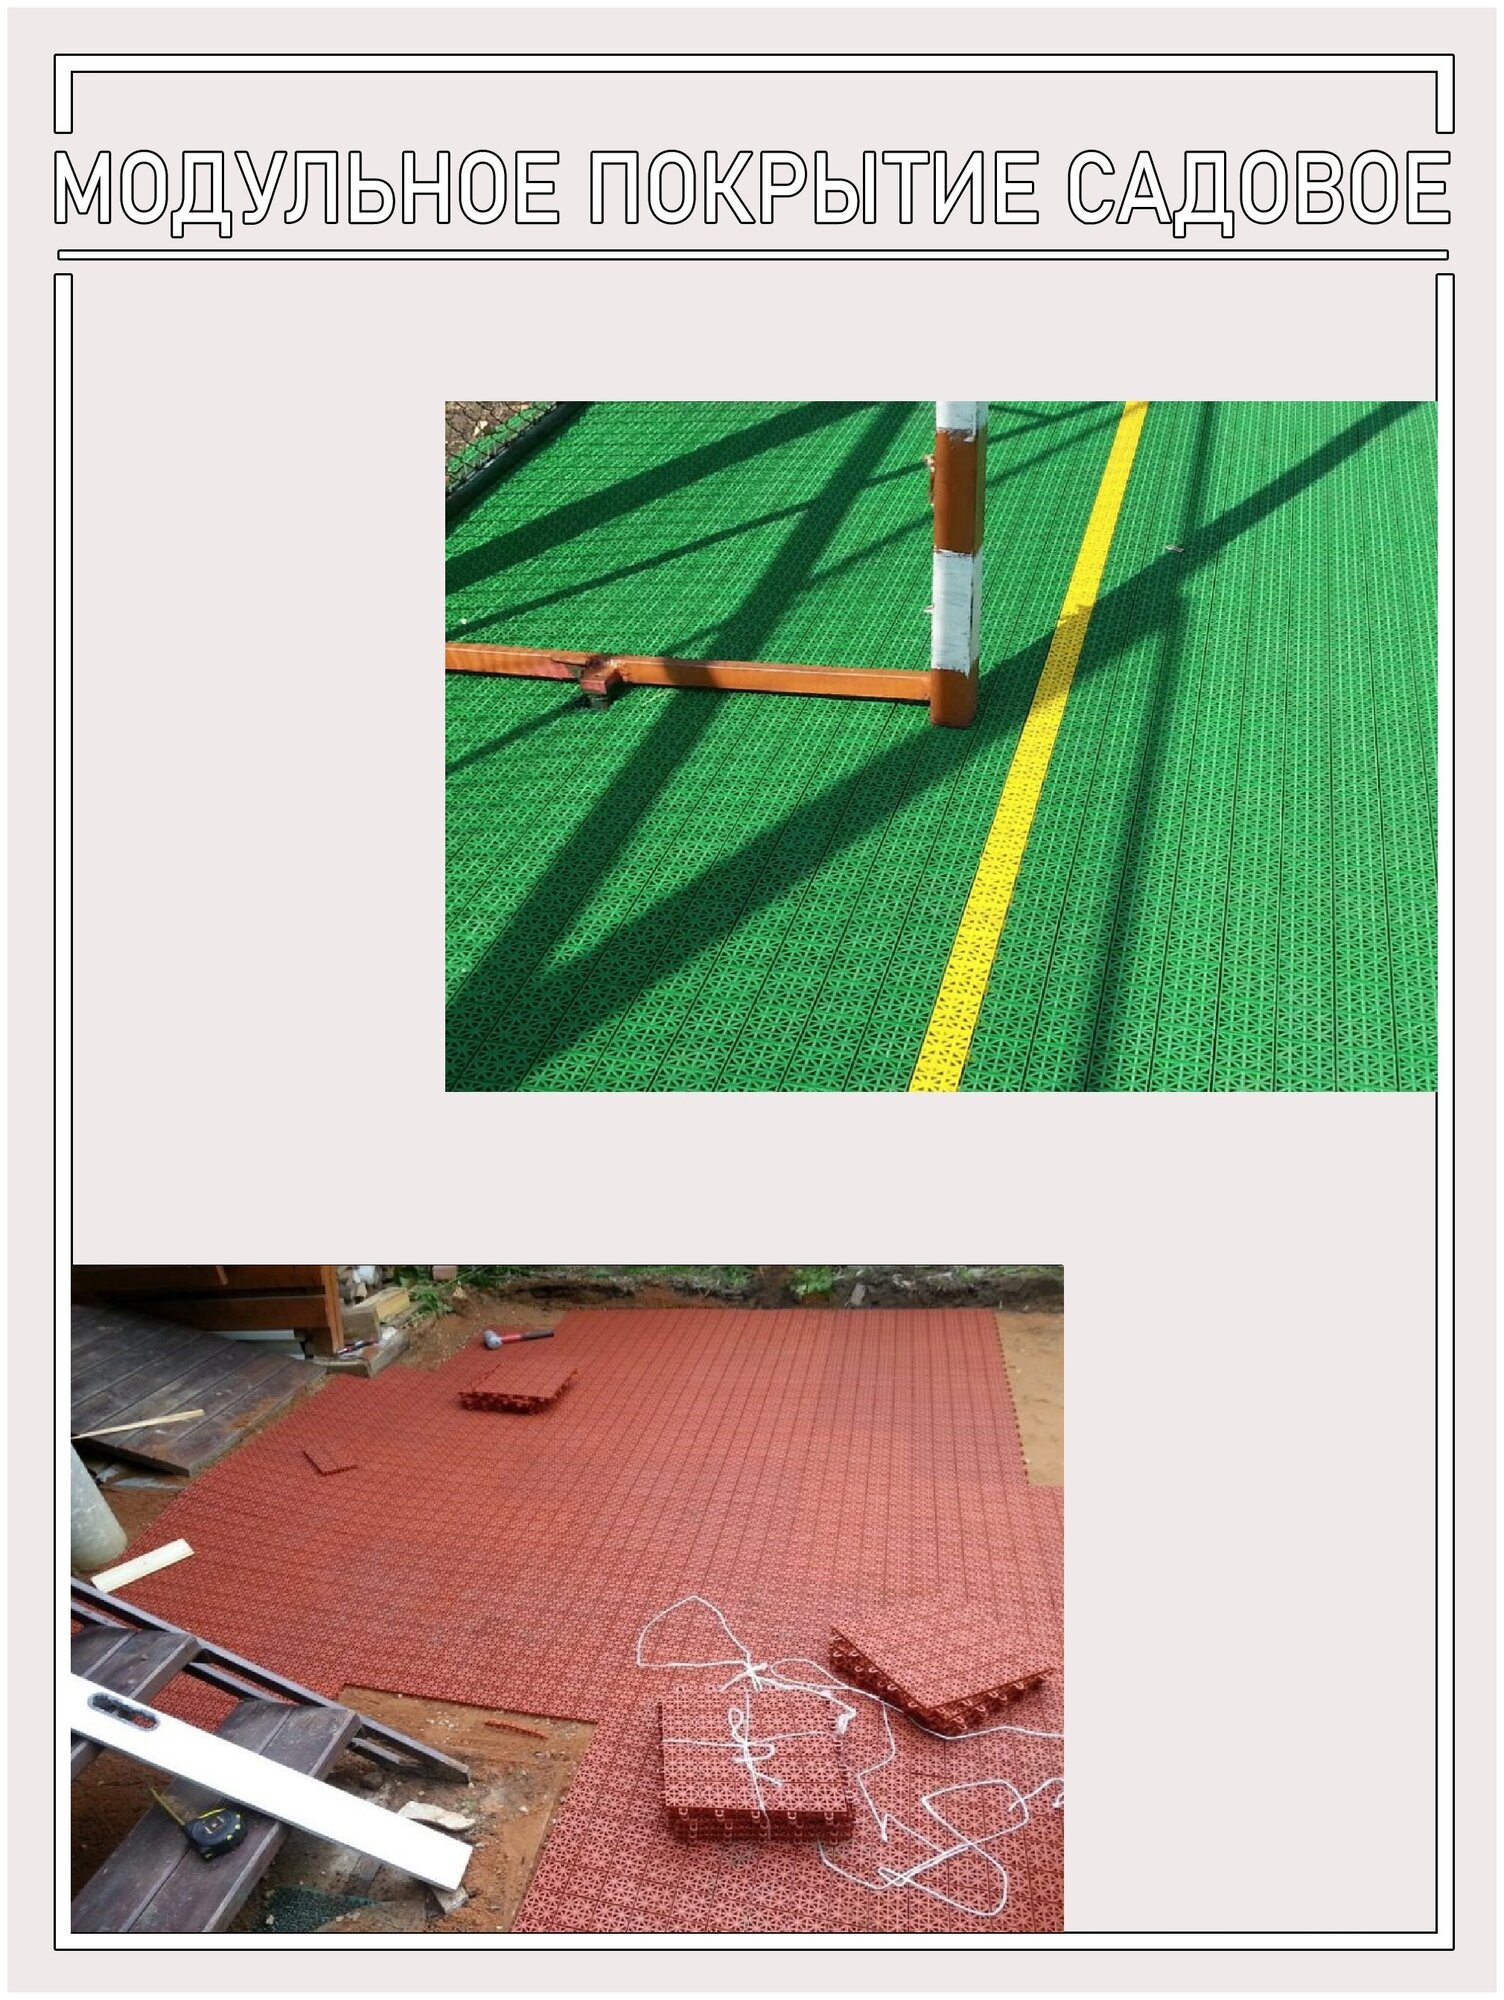 Модульное покрытие универсальное для улиц и помещений, цвет хаки (модуль 9 штук) - фотография № 6